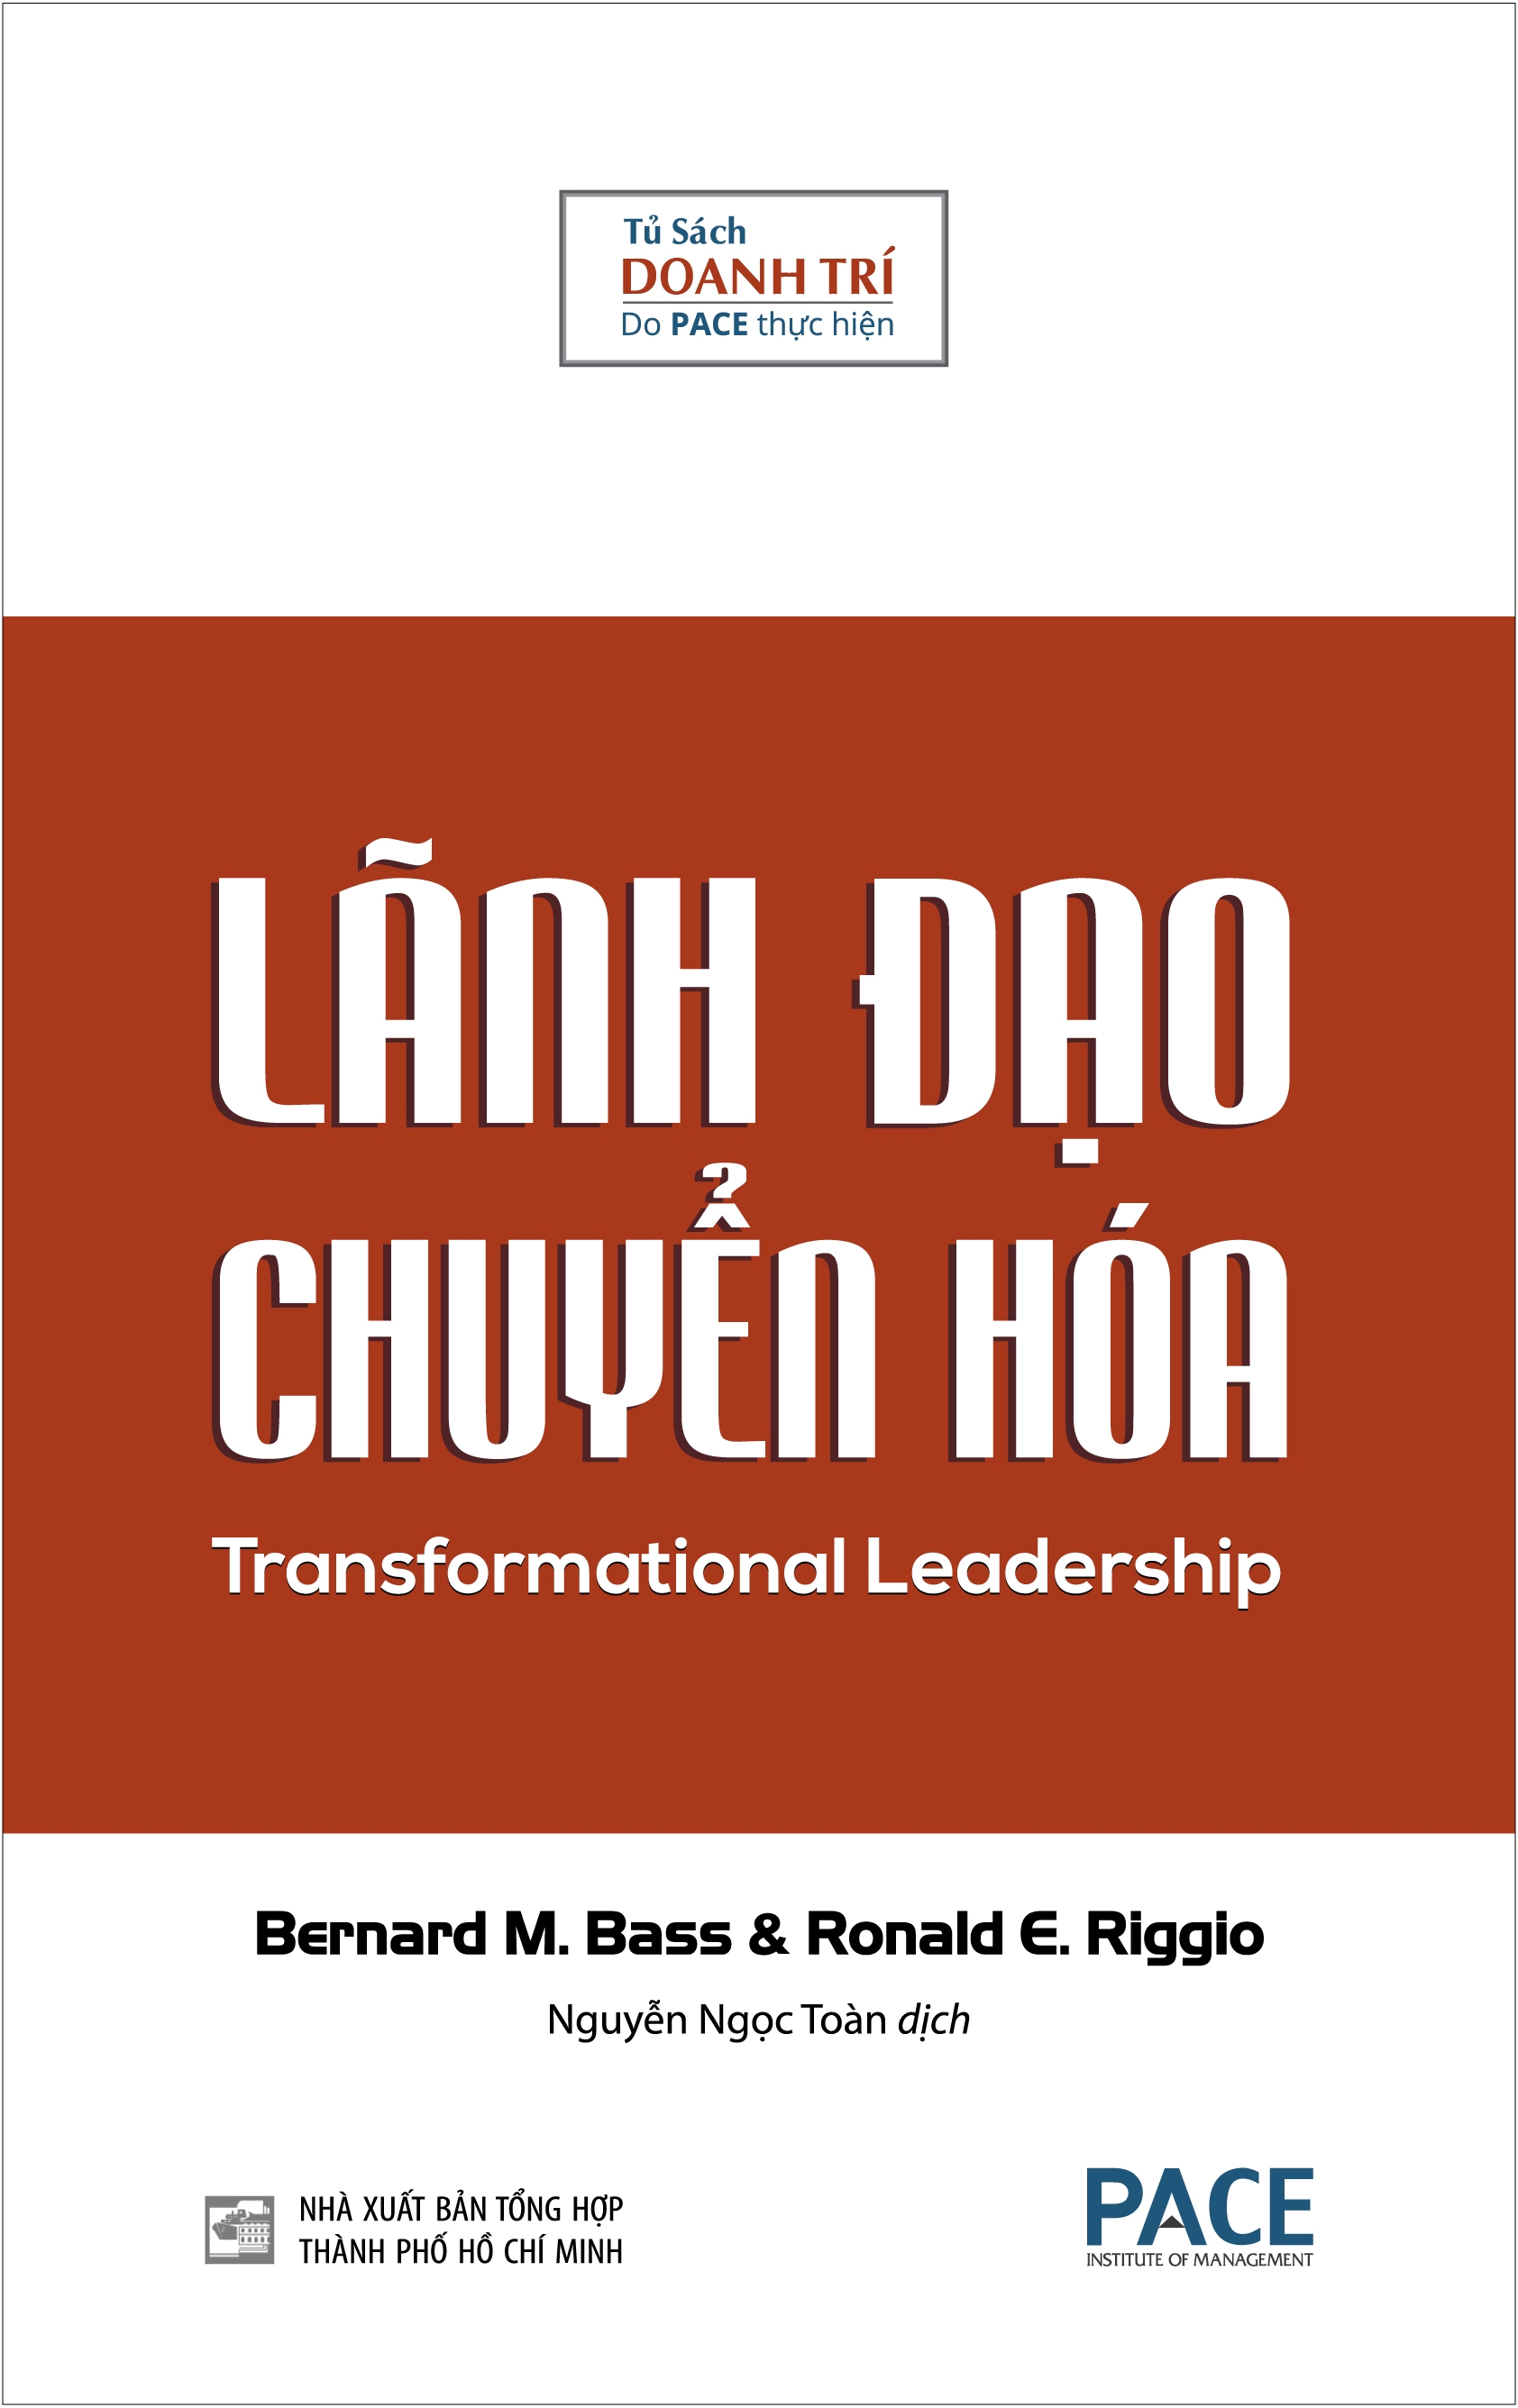 Lãnh Đạo Chuyển Hóa - Transformational Leadership PDF